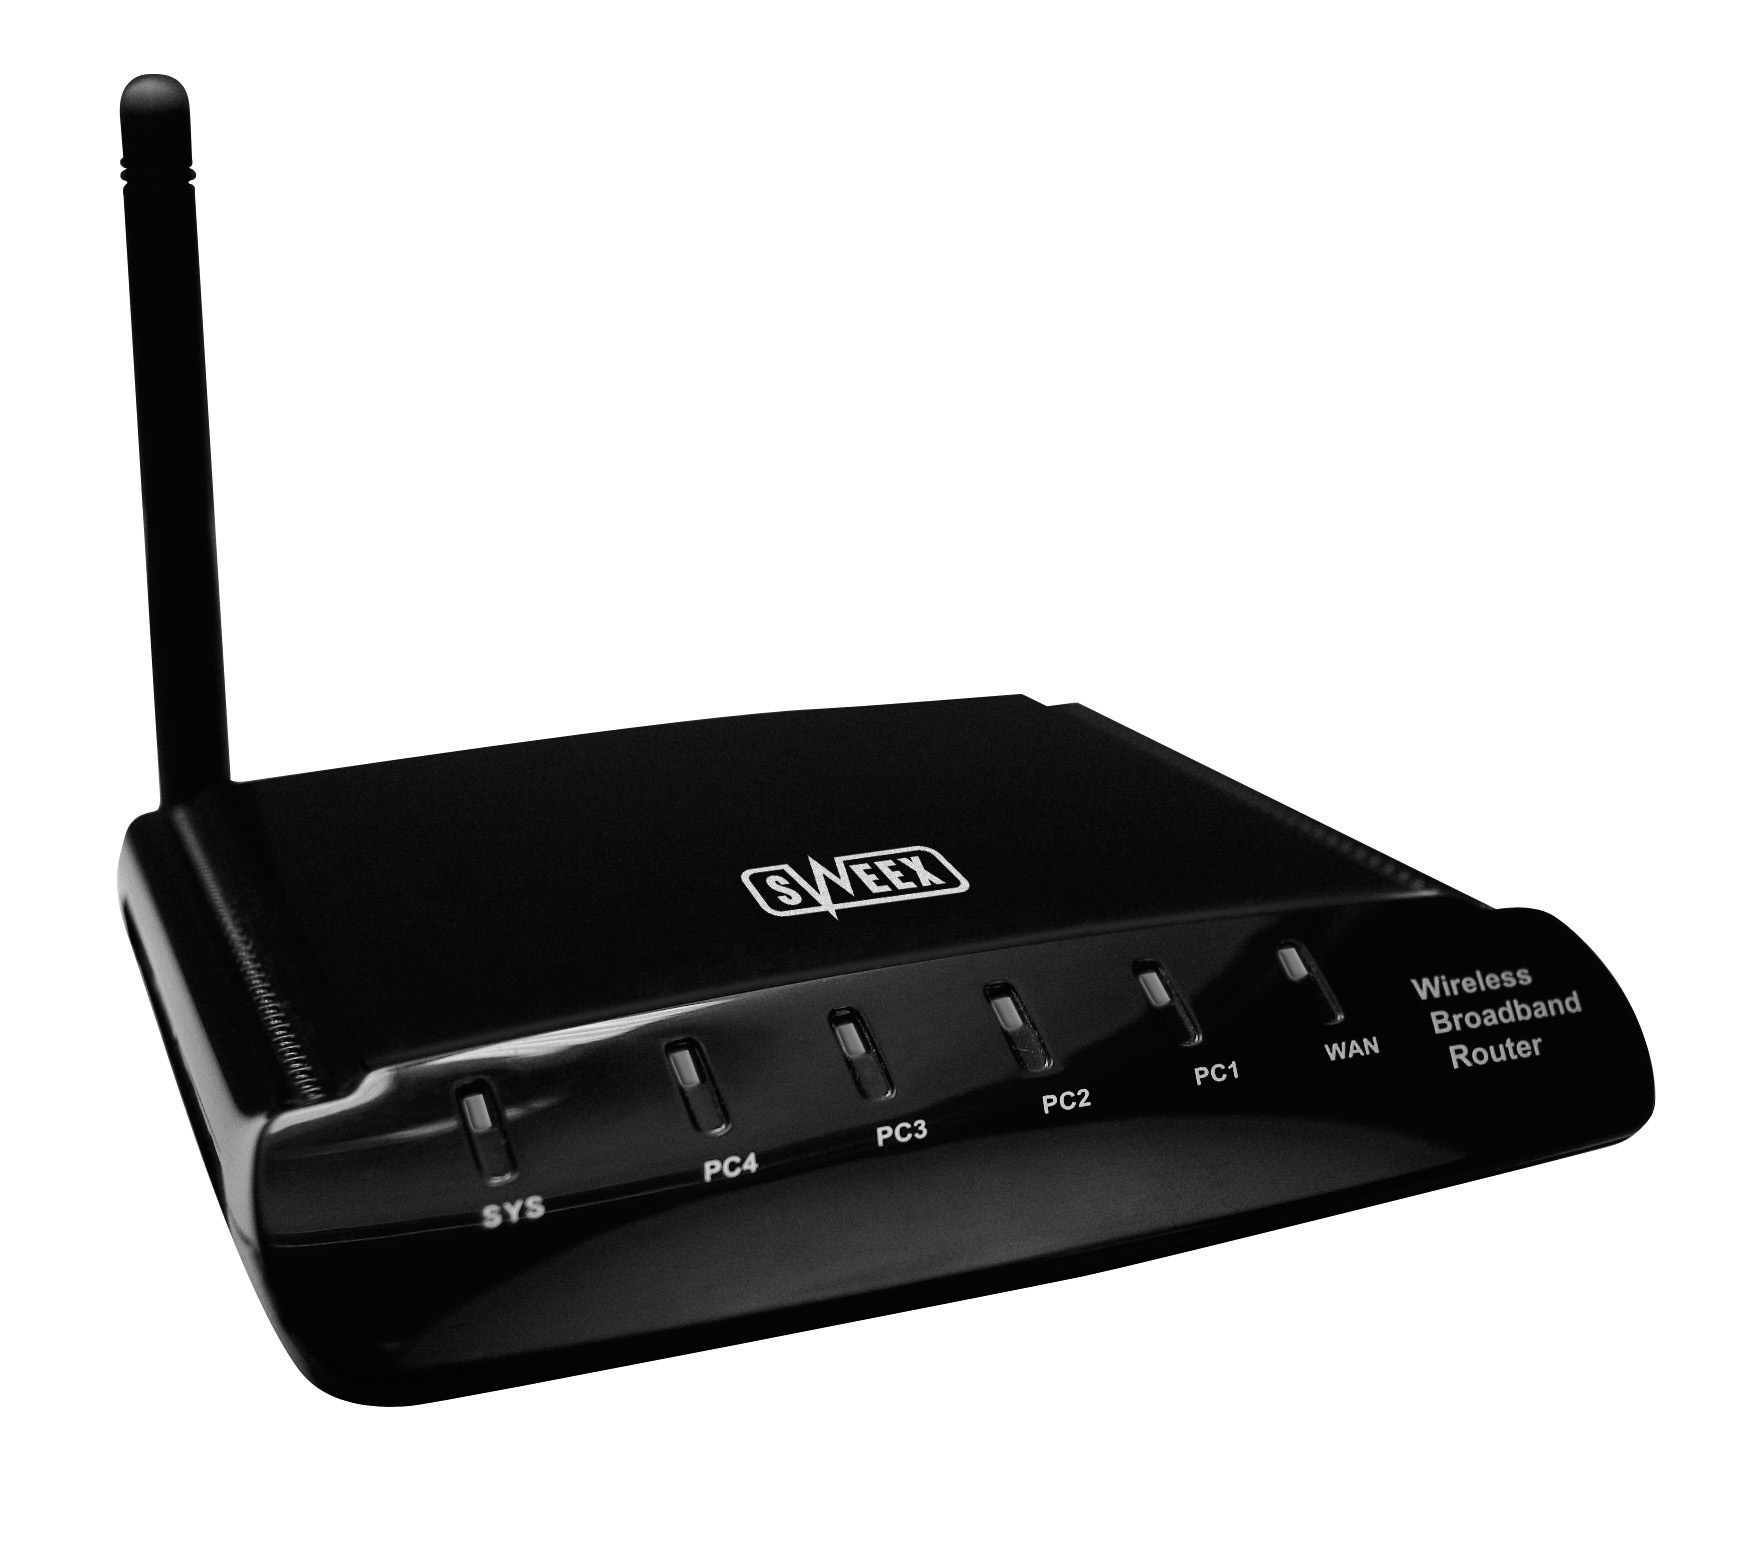 LW055 Sweex Wireless Broadband Router 54 Mbps Przód urządzenia Status Wył. Znaczenie Do tego portu nie jest podłączone urządzenie LAN1x t/m 4x Wł.